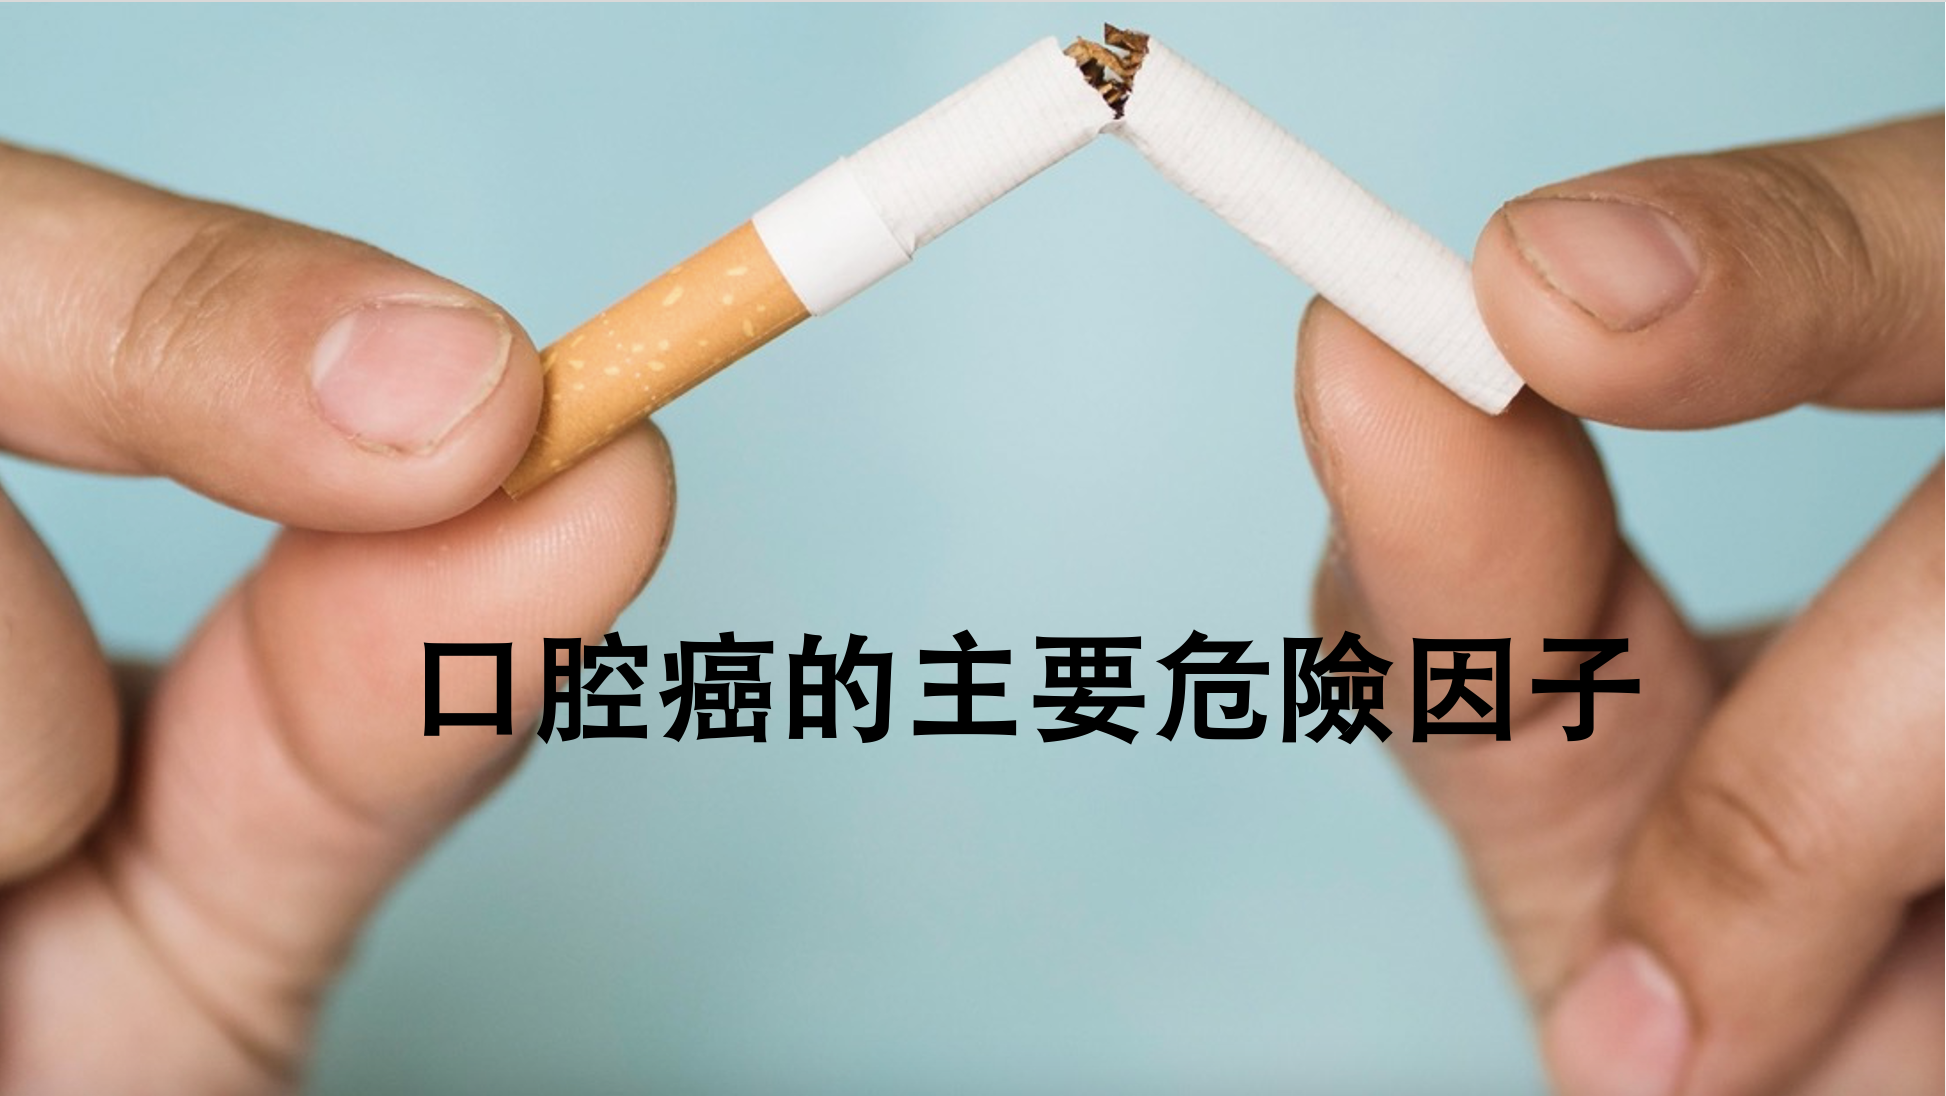 吸菸致牙周疾病風險高 戒菸保護口腔健康